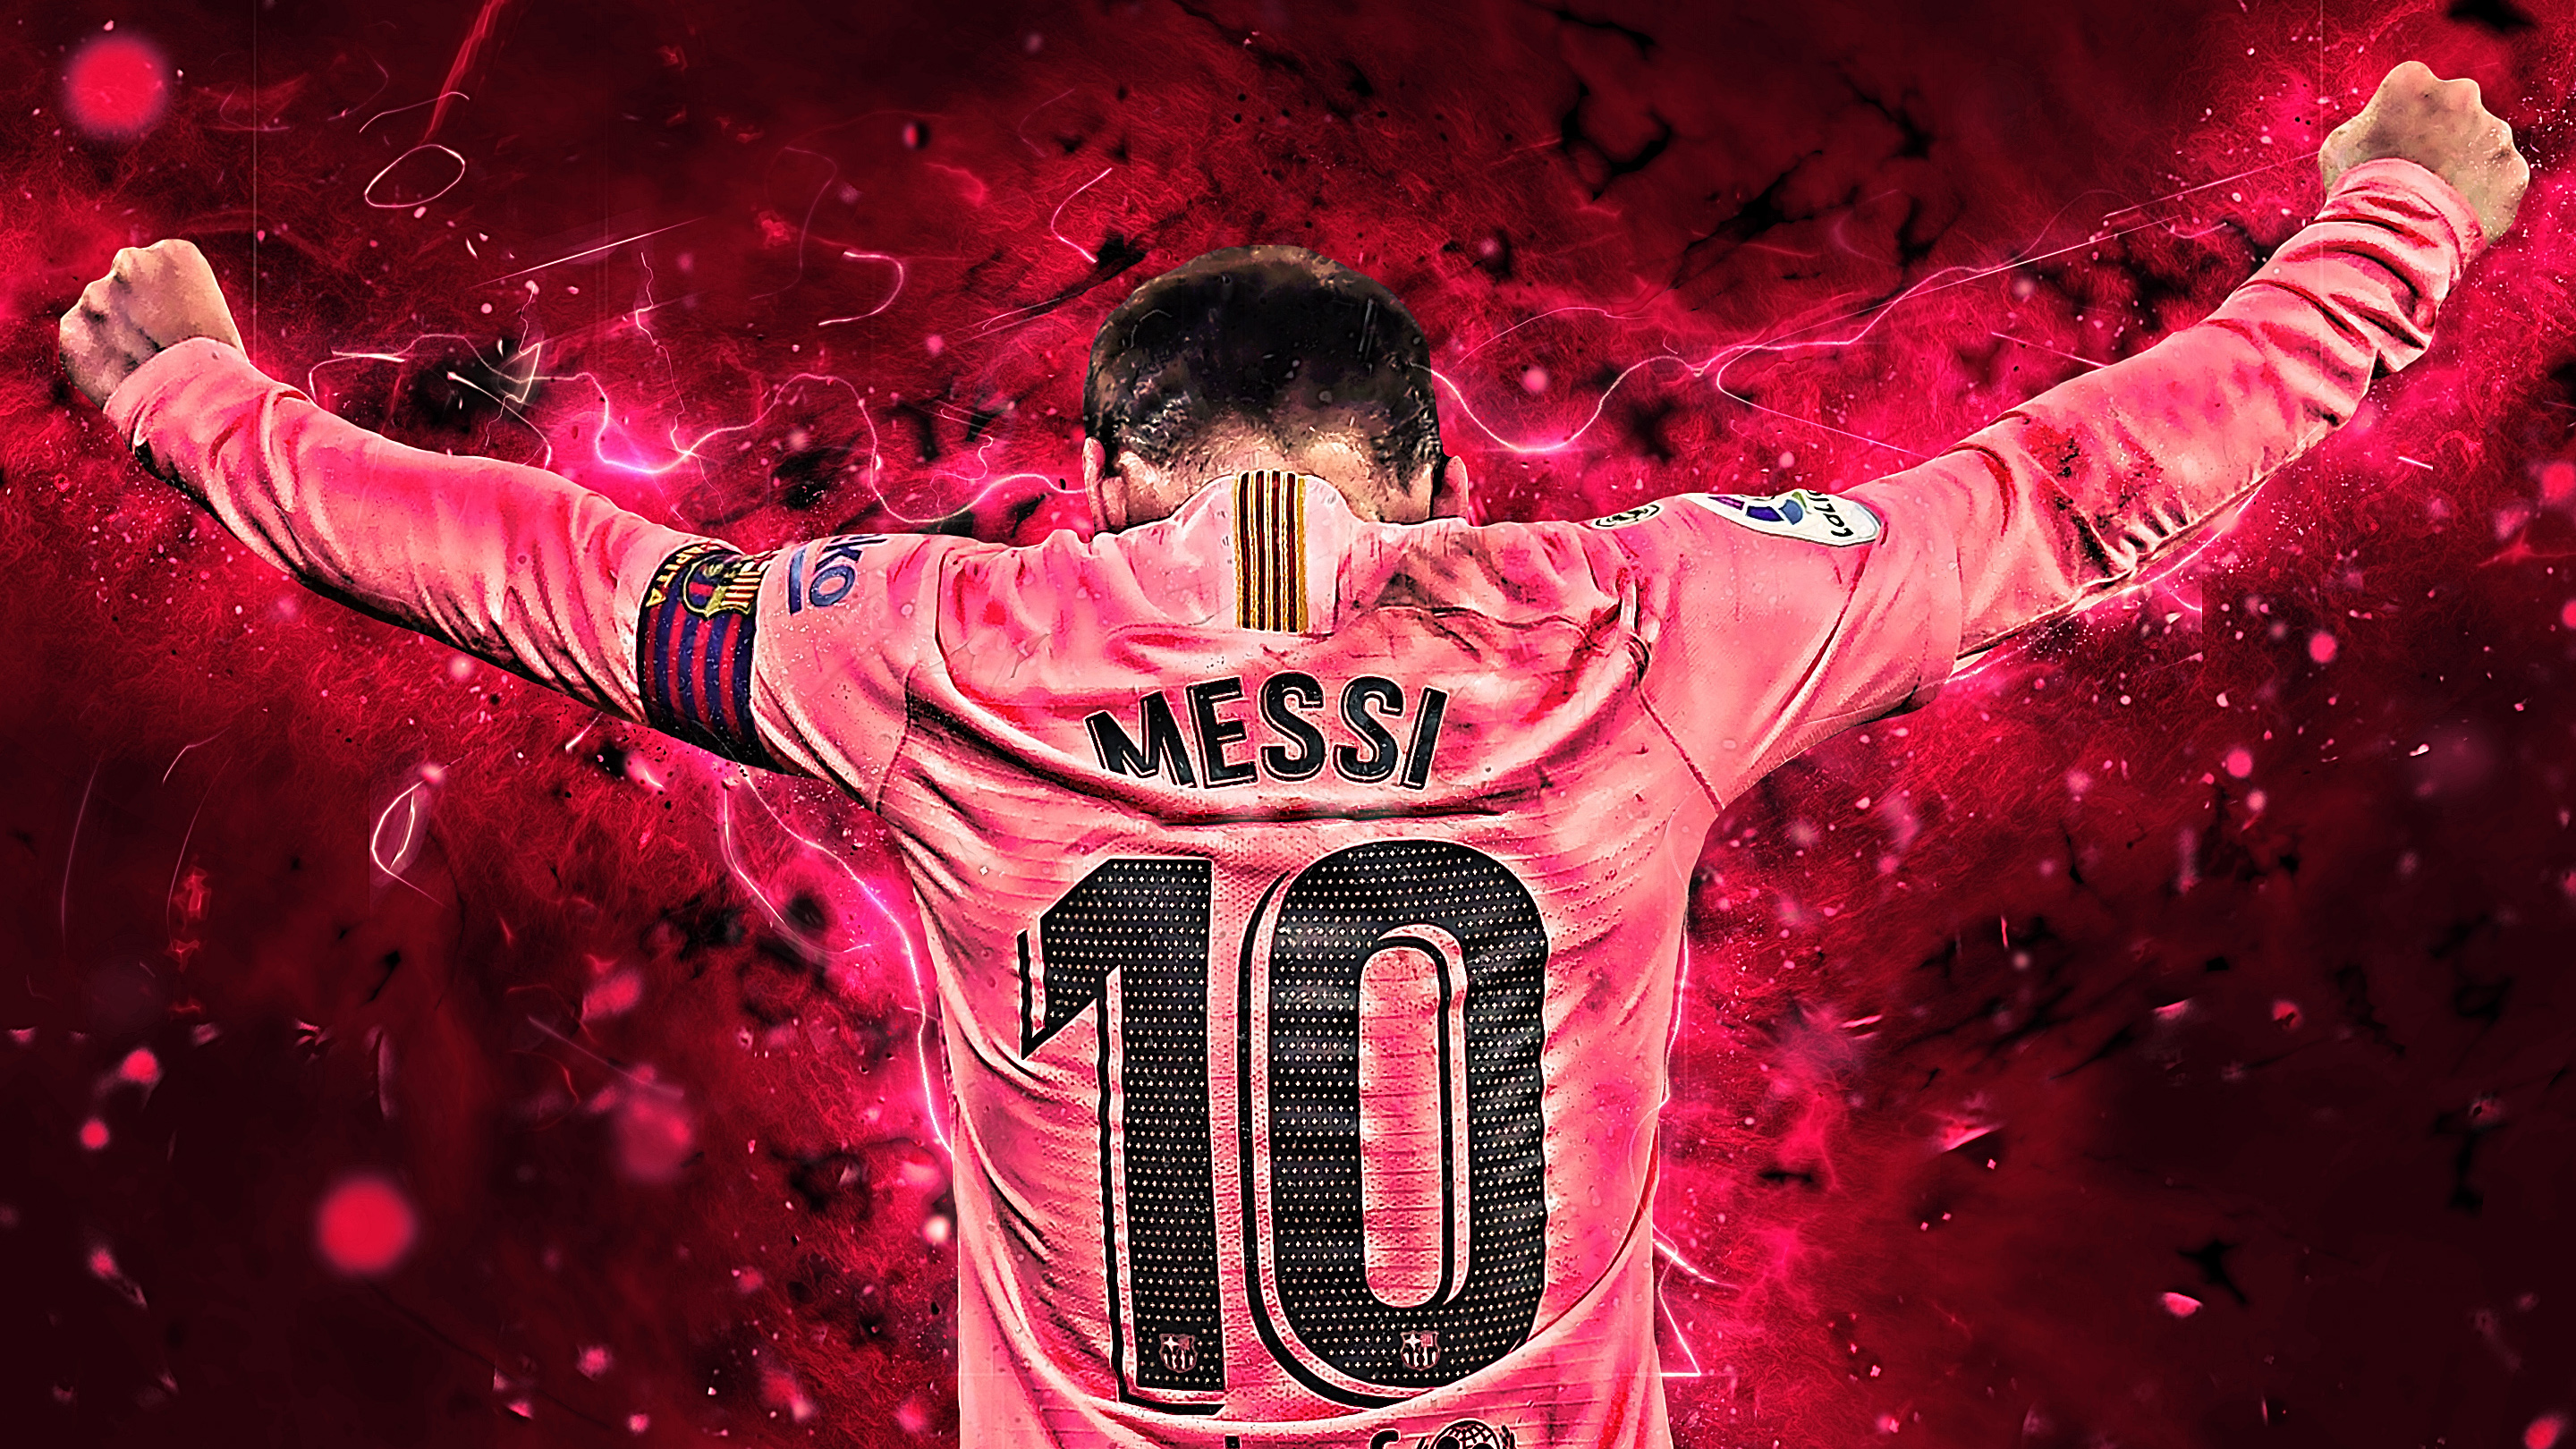 Hãy trang trí cho màn hình điện thoại hoặc máy tính bằng những Lionel Messi 2019 Wallpapers mới nhất trong mùa bóng đá. Với những hình ảnh tuyệt đẹp, đầy sức sống và hoành tráng, bạn sẽ cảm thấy như đang trực tiếp theo dõi những trận đấu thật tuyệt vời của Messi.